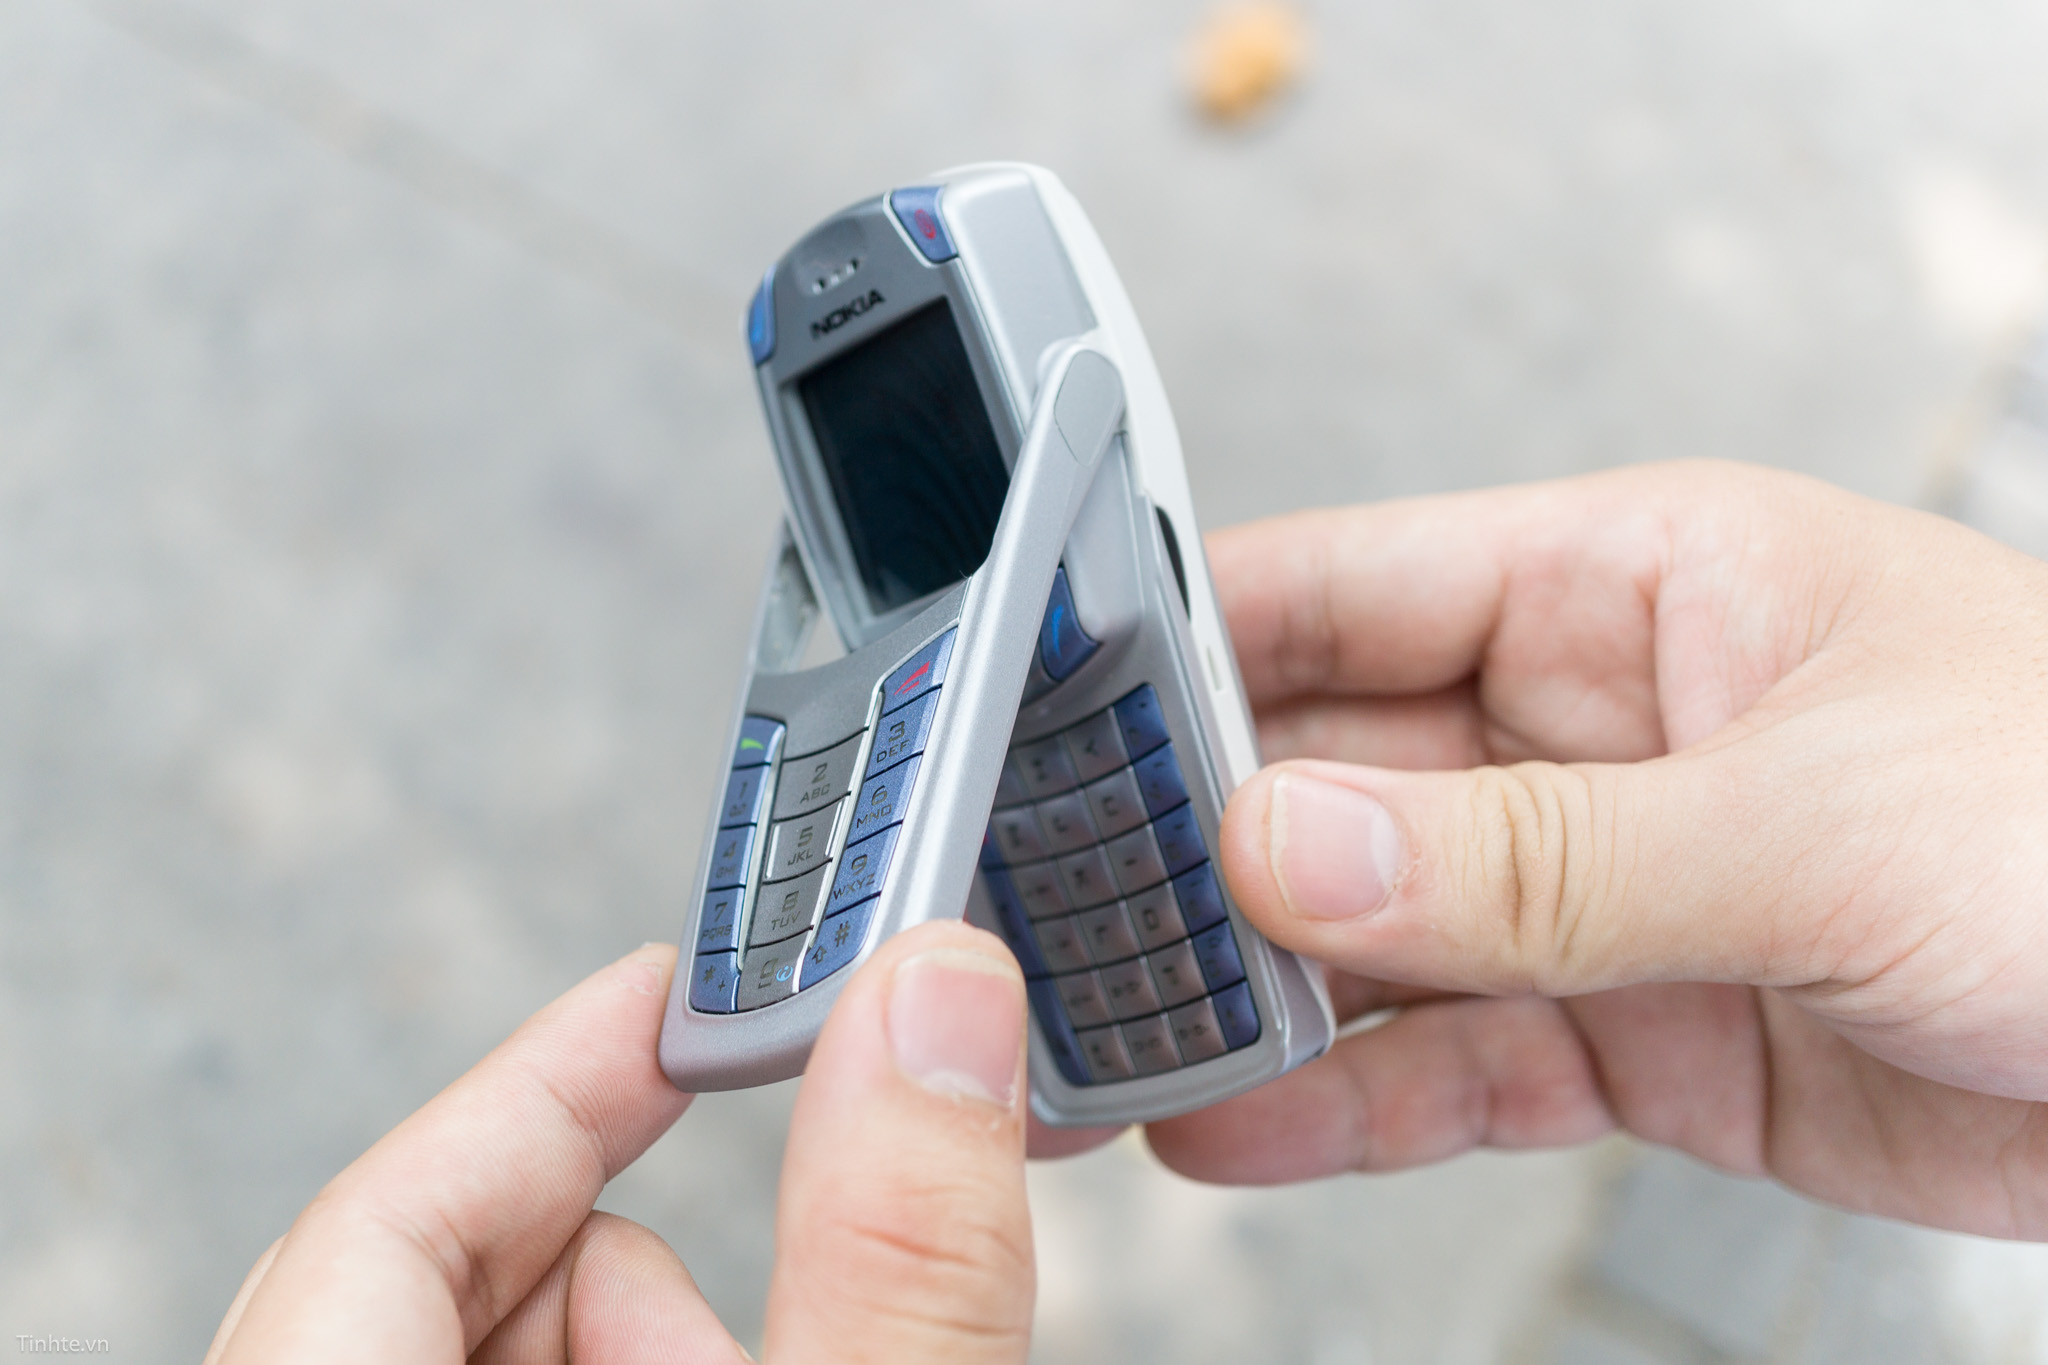 Nokia 1100 5G 2022 có gì mới: Giá 1.1 triệu, pin 8.150mAh, bàn phím T9